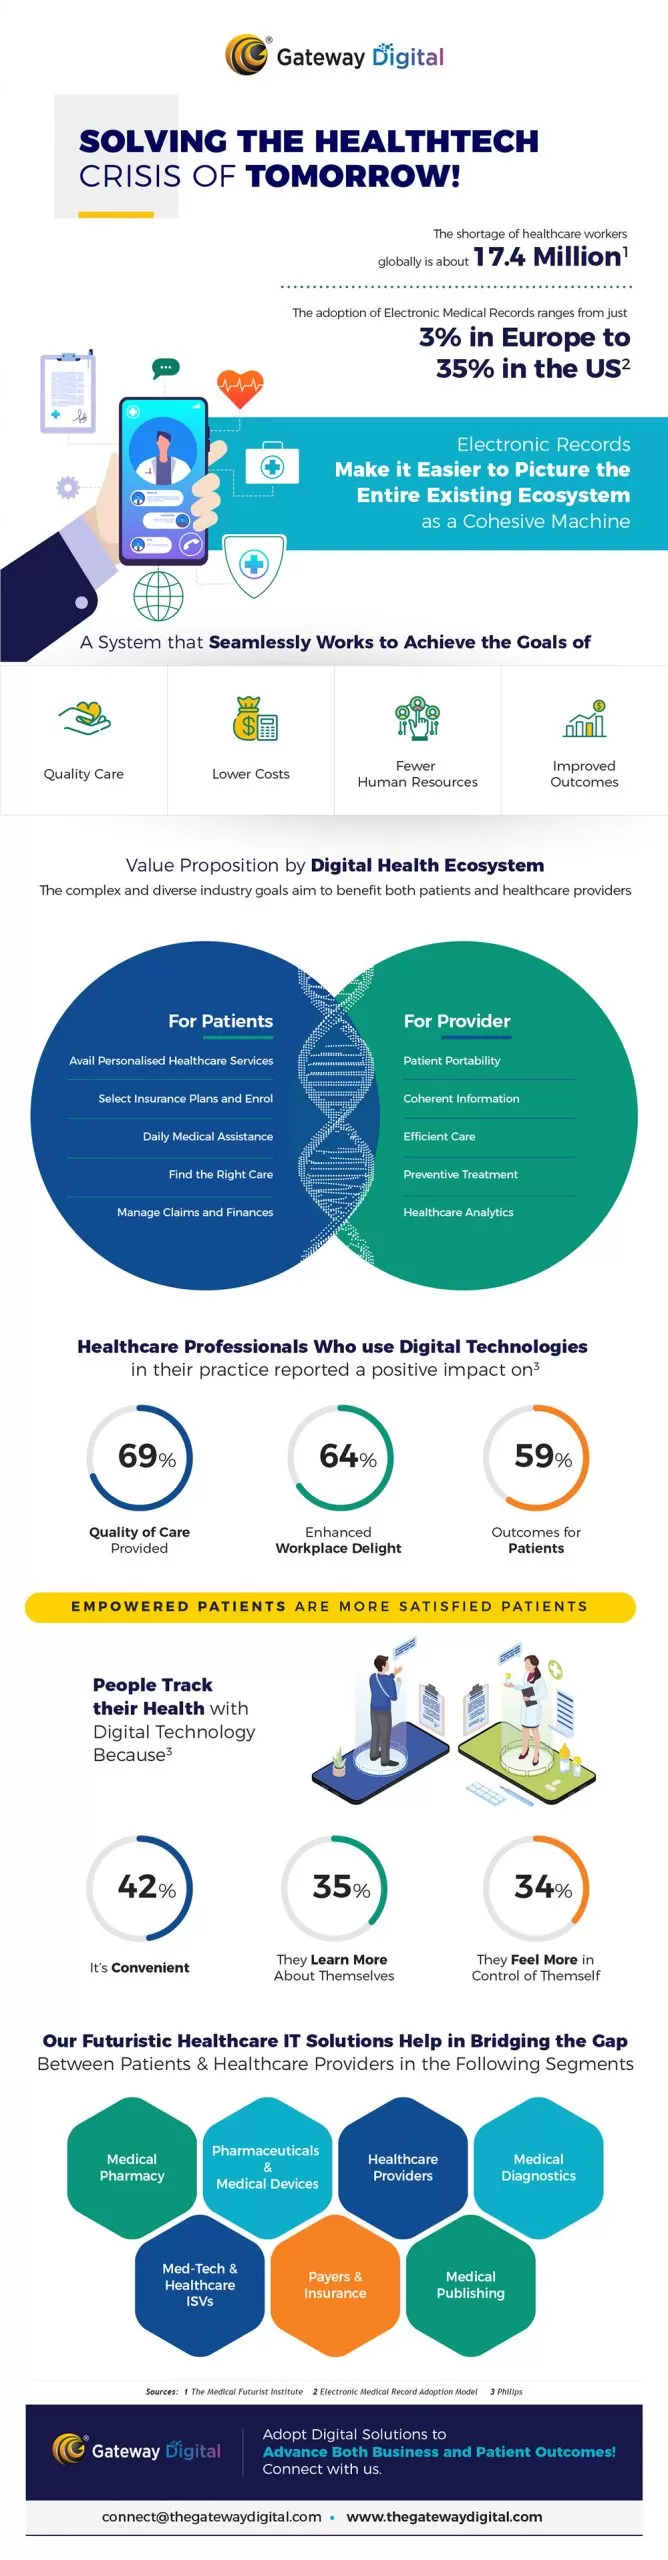 digital healthcare transformation